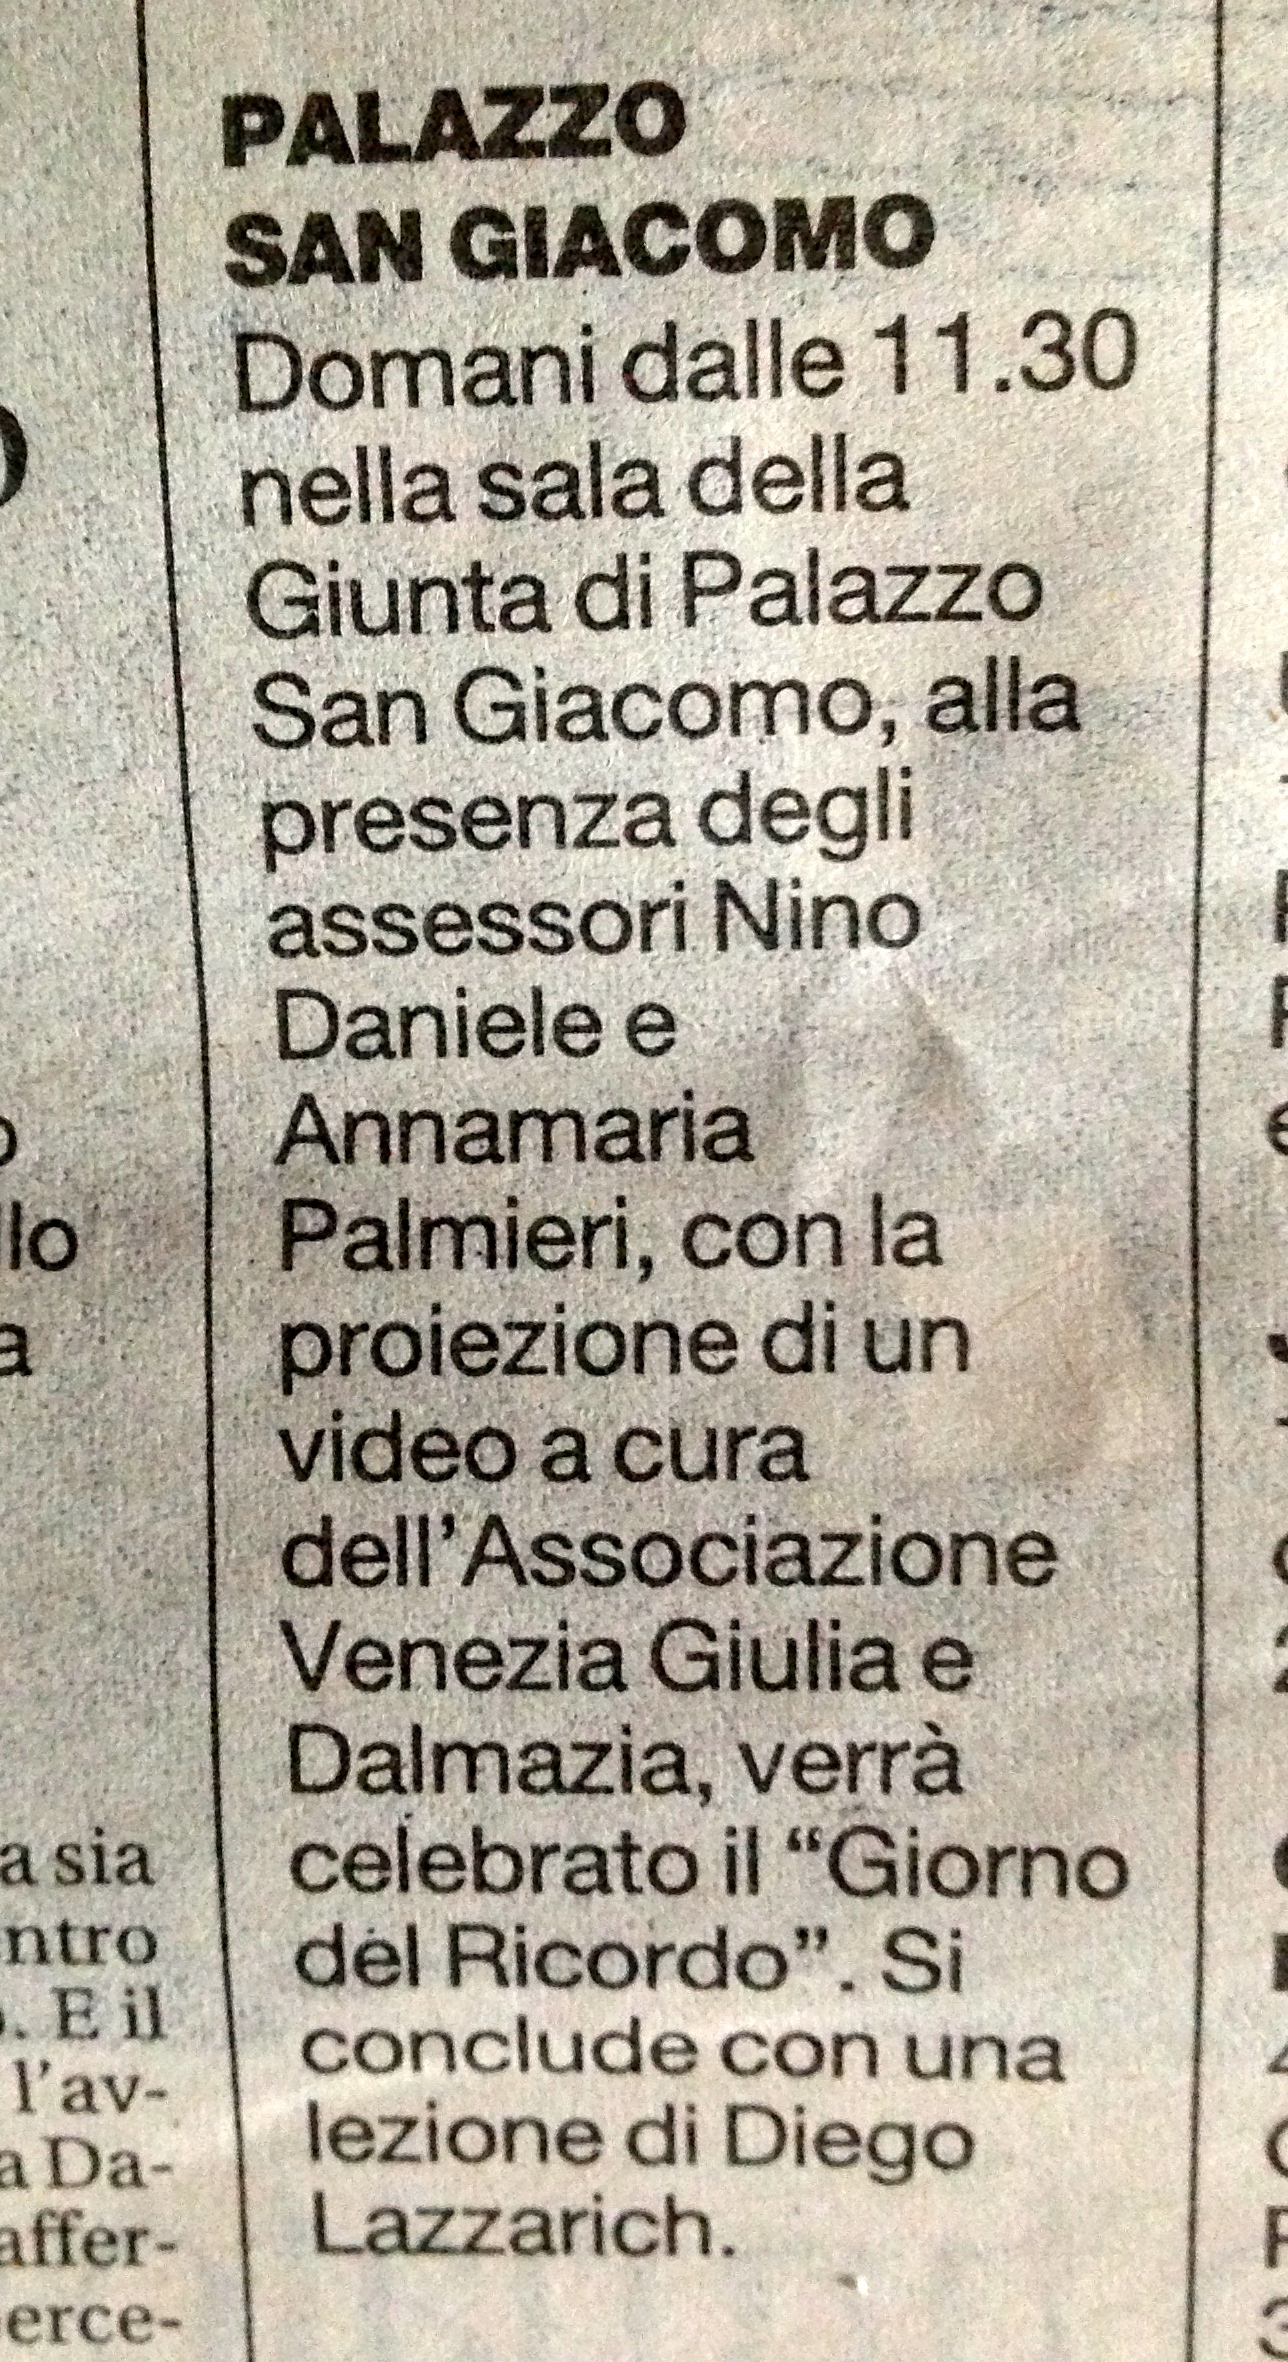 La Repubblica (Napoli), 9/2/2014, p. XIV